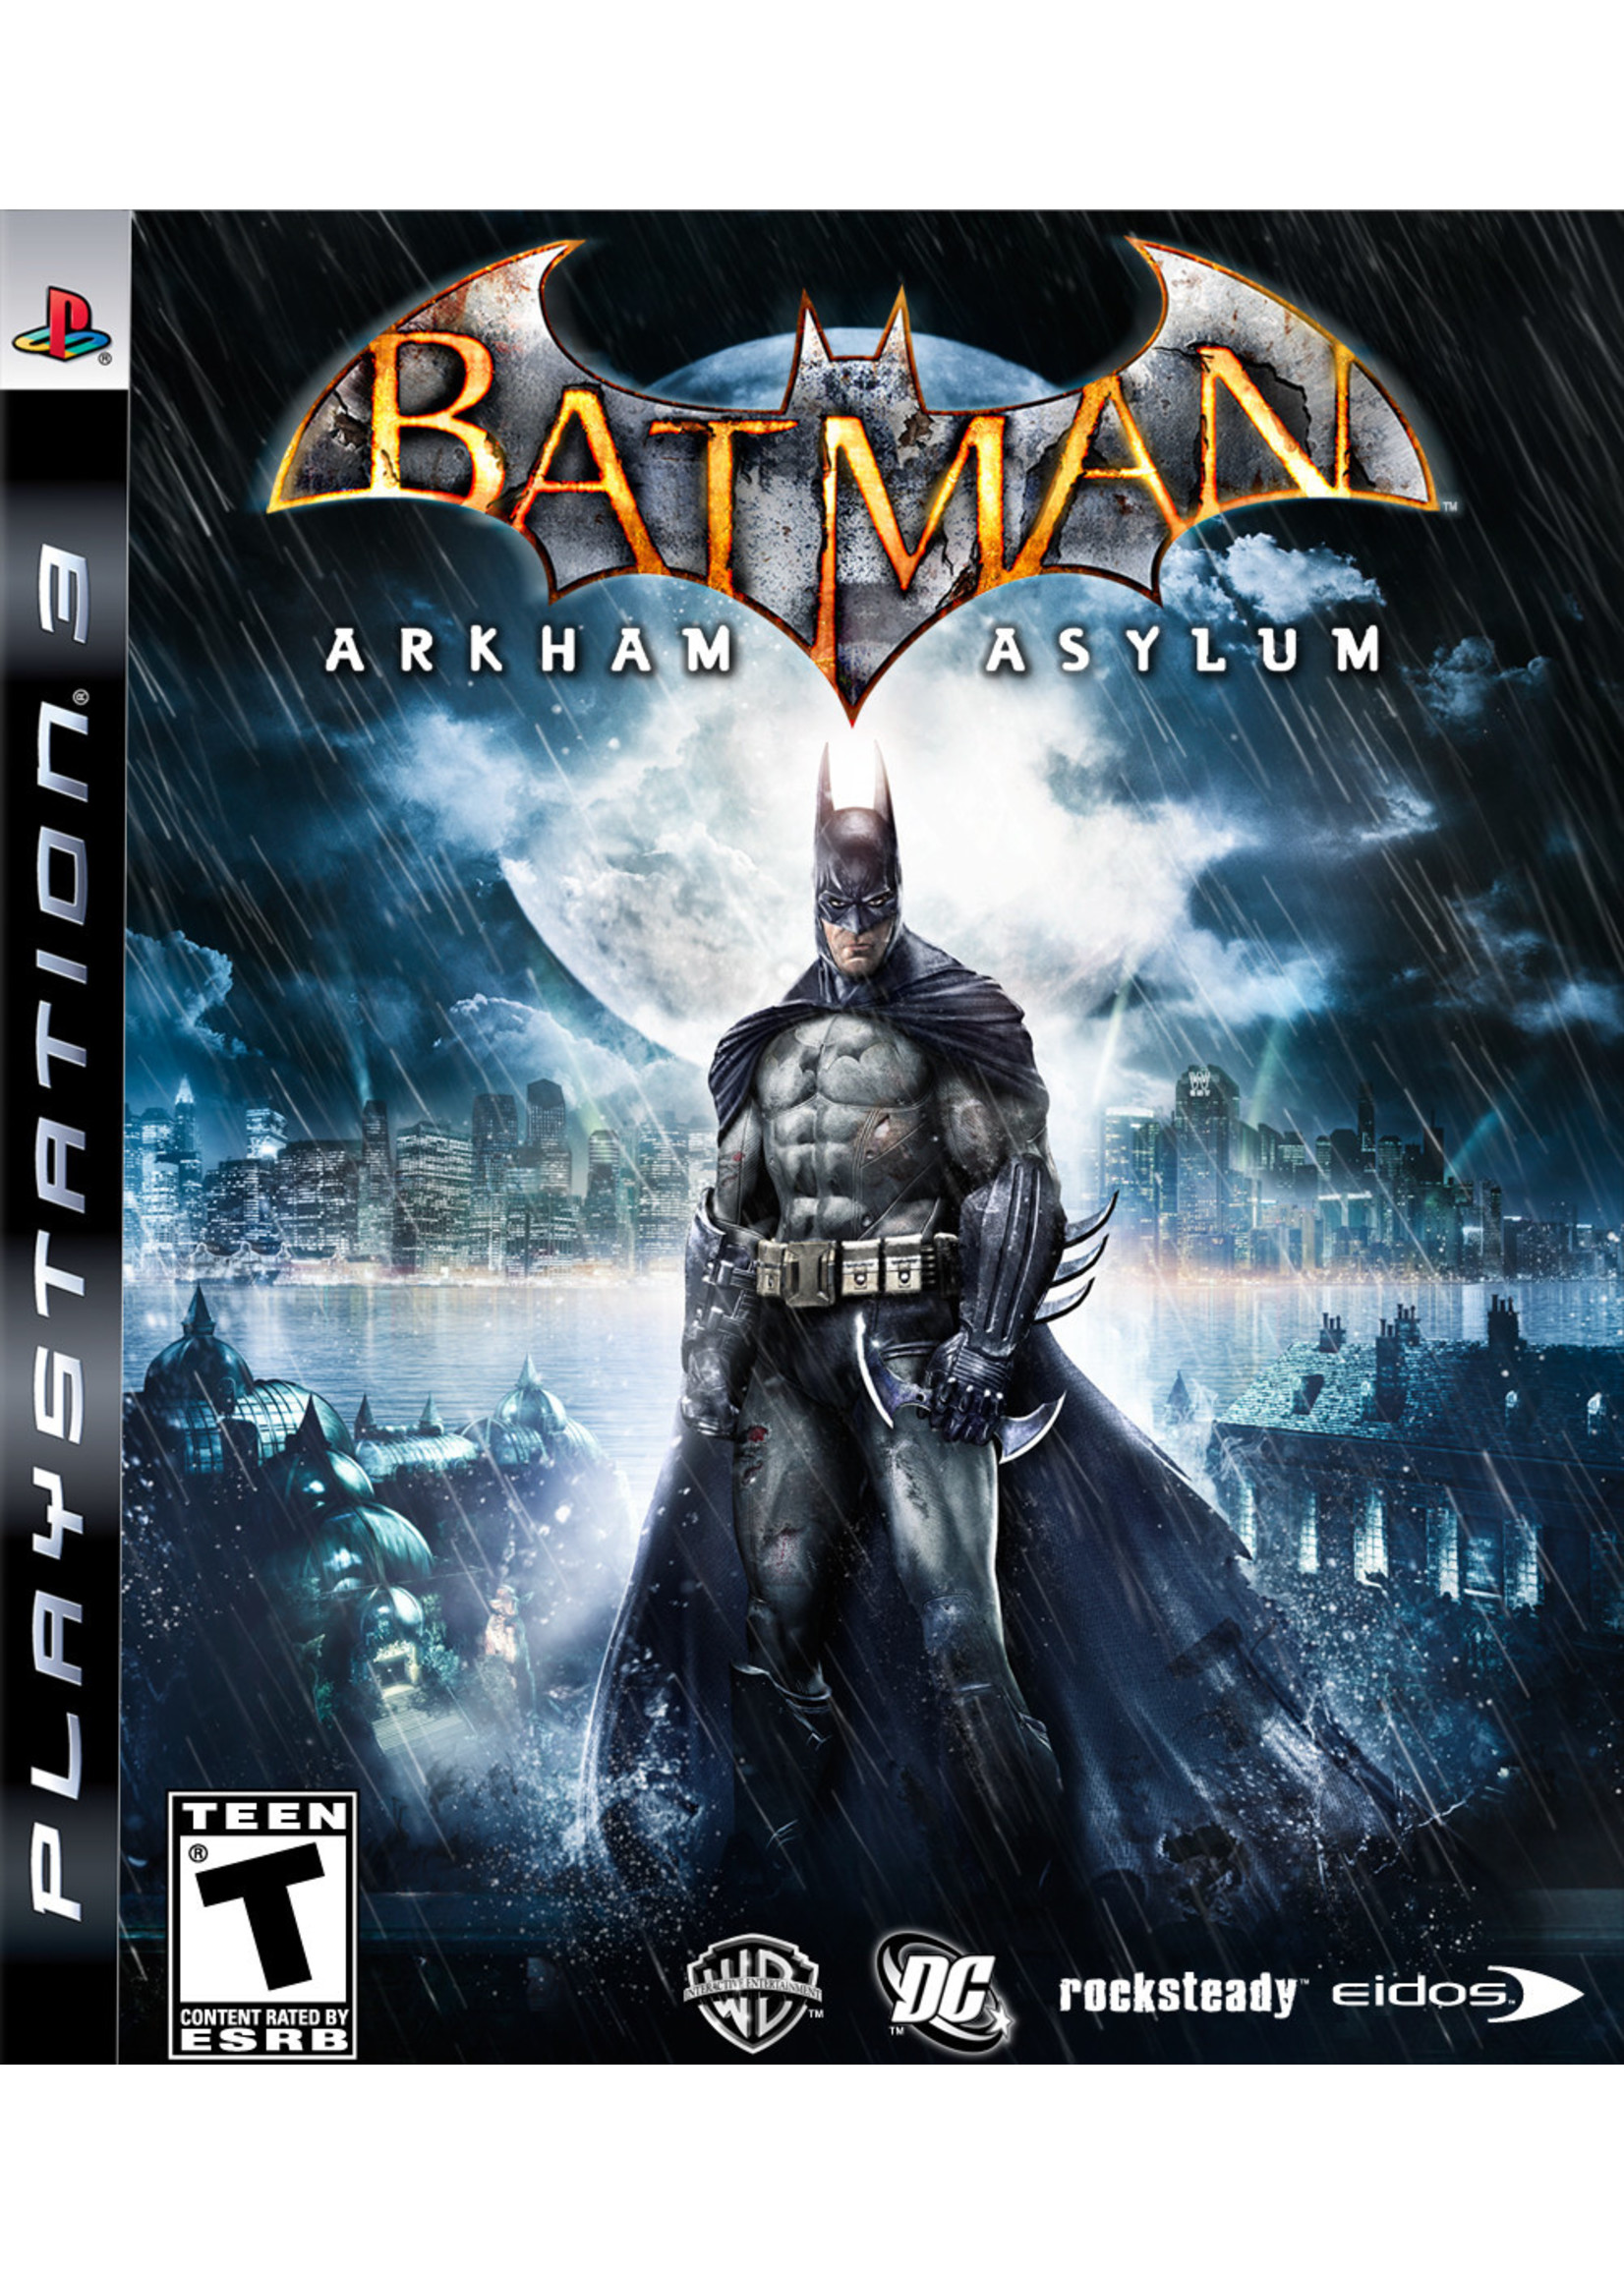 Sony Playstation 3 (PS3) Batman: Arkham Asylum